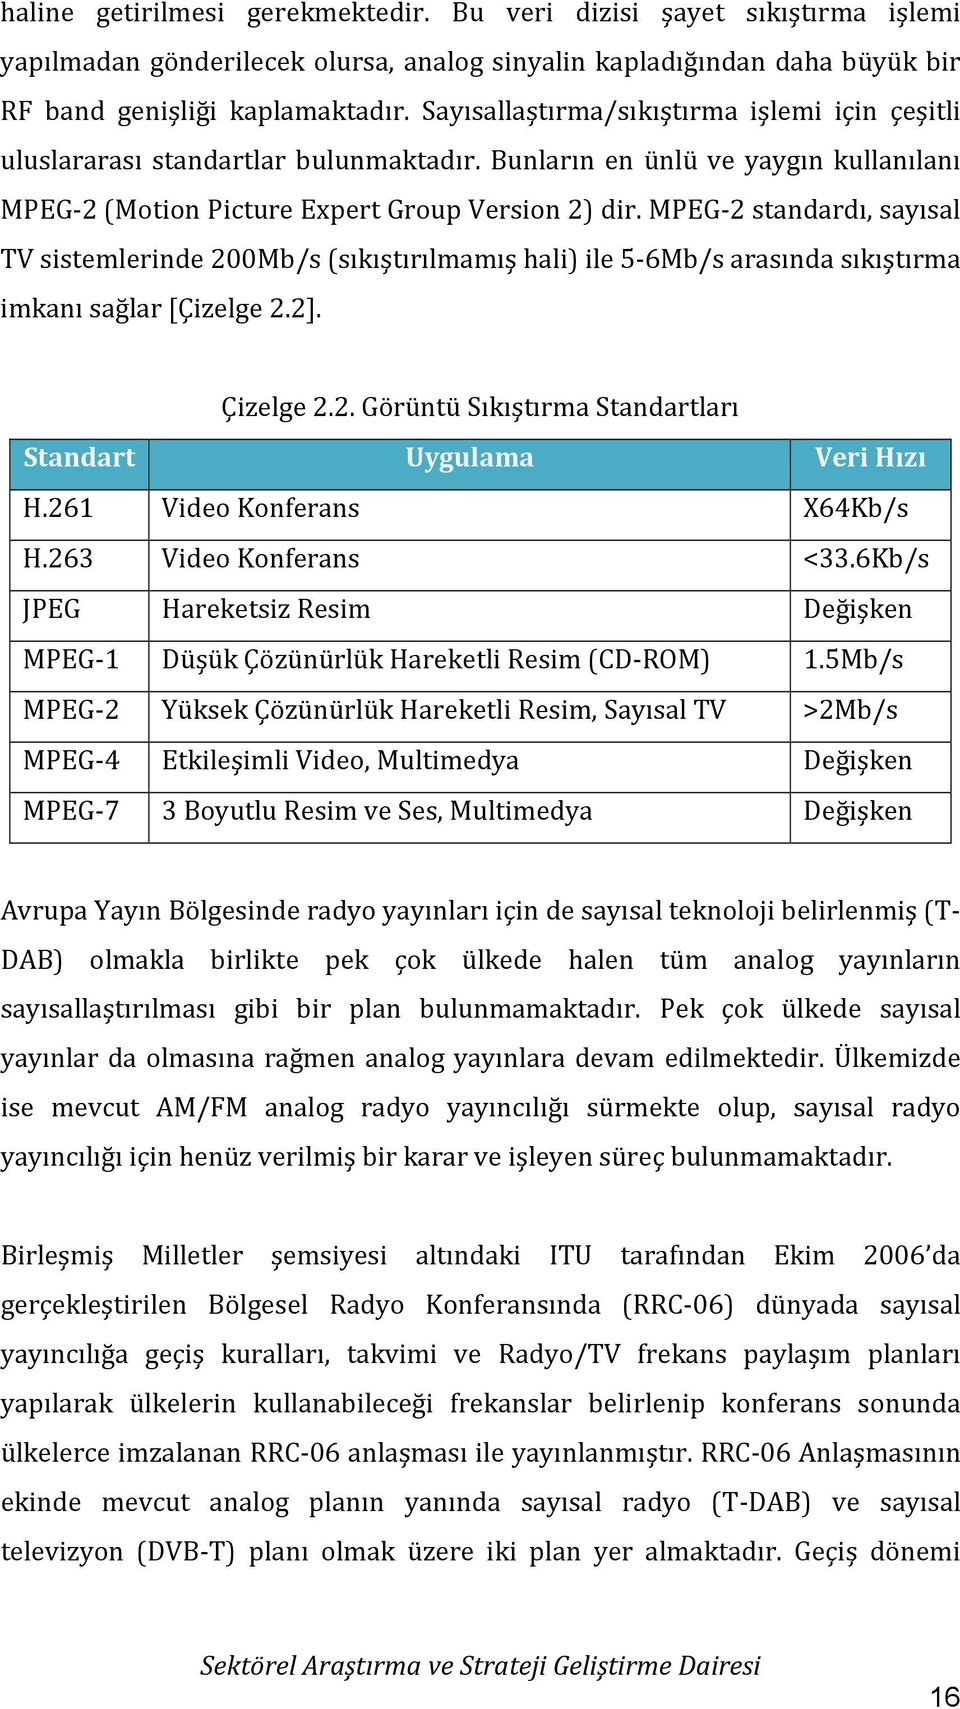 MPEG-2 standardı, sayısal TV sistemlerinde 200Mb/s (sıkıştırılmamış hali) ile 5-6Mb/s arasında sıkıştırma imkanı sağlar [Çizelge 2.2]. Çizelge 2.2. Görüntü Sıkıştırma Standartları Standart Uygulama Veri Hızı H.